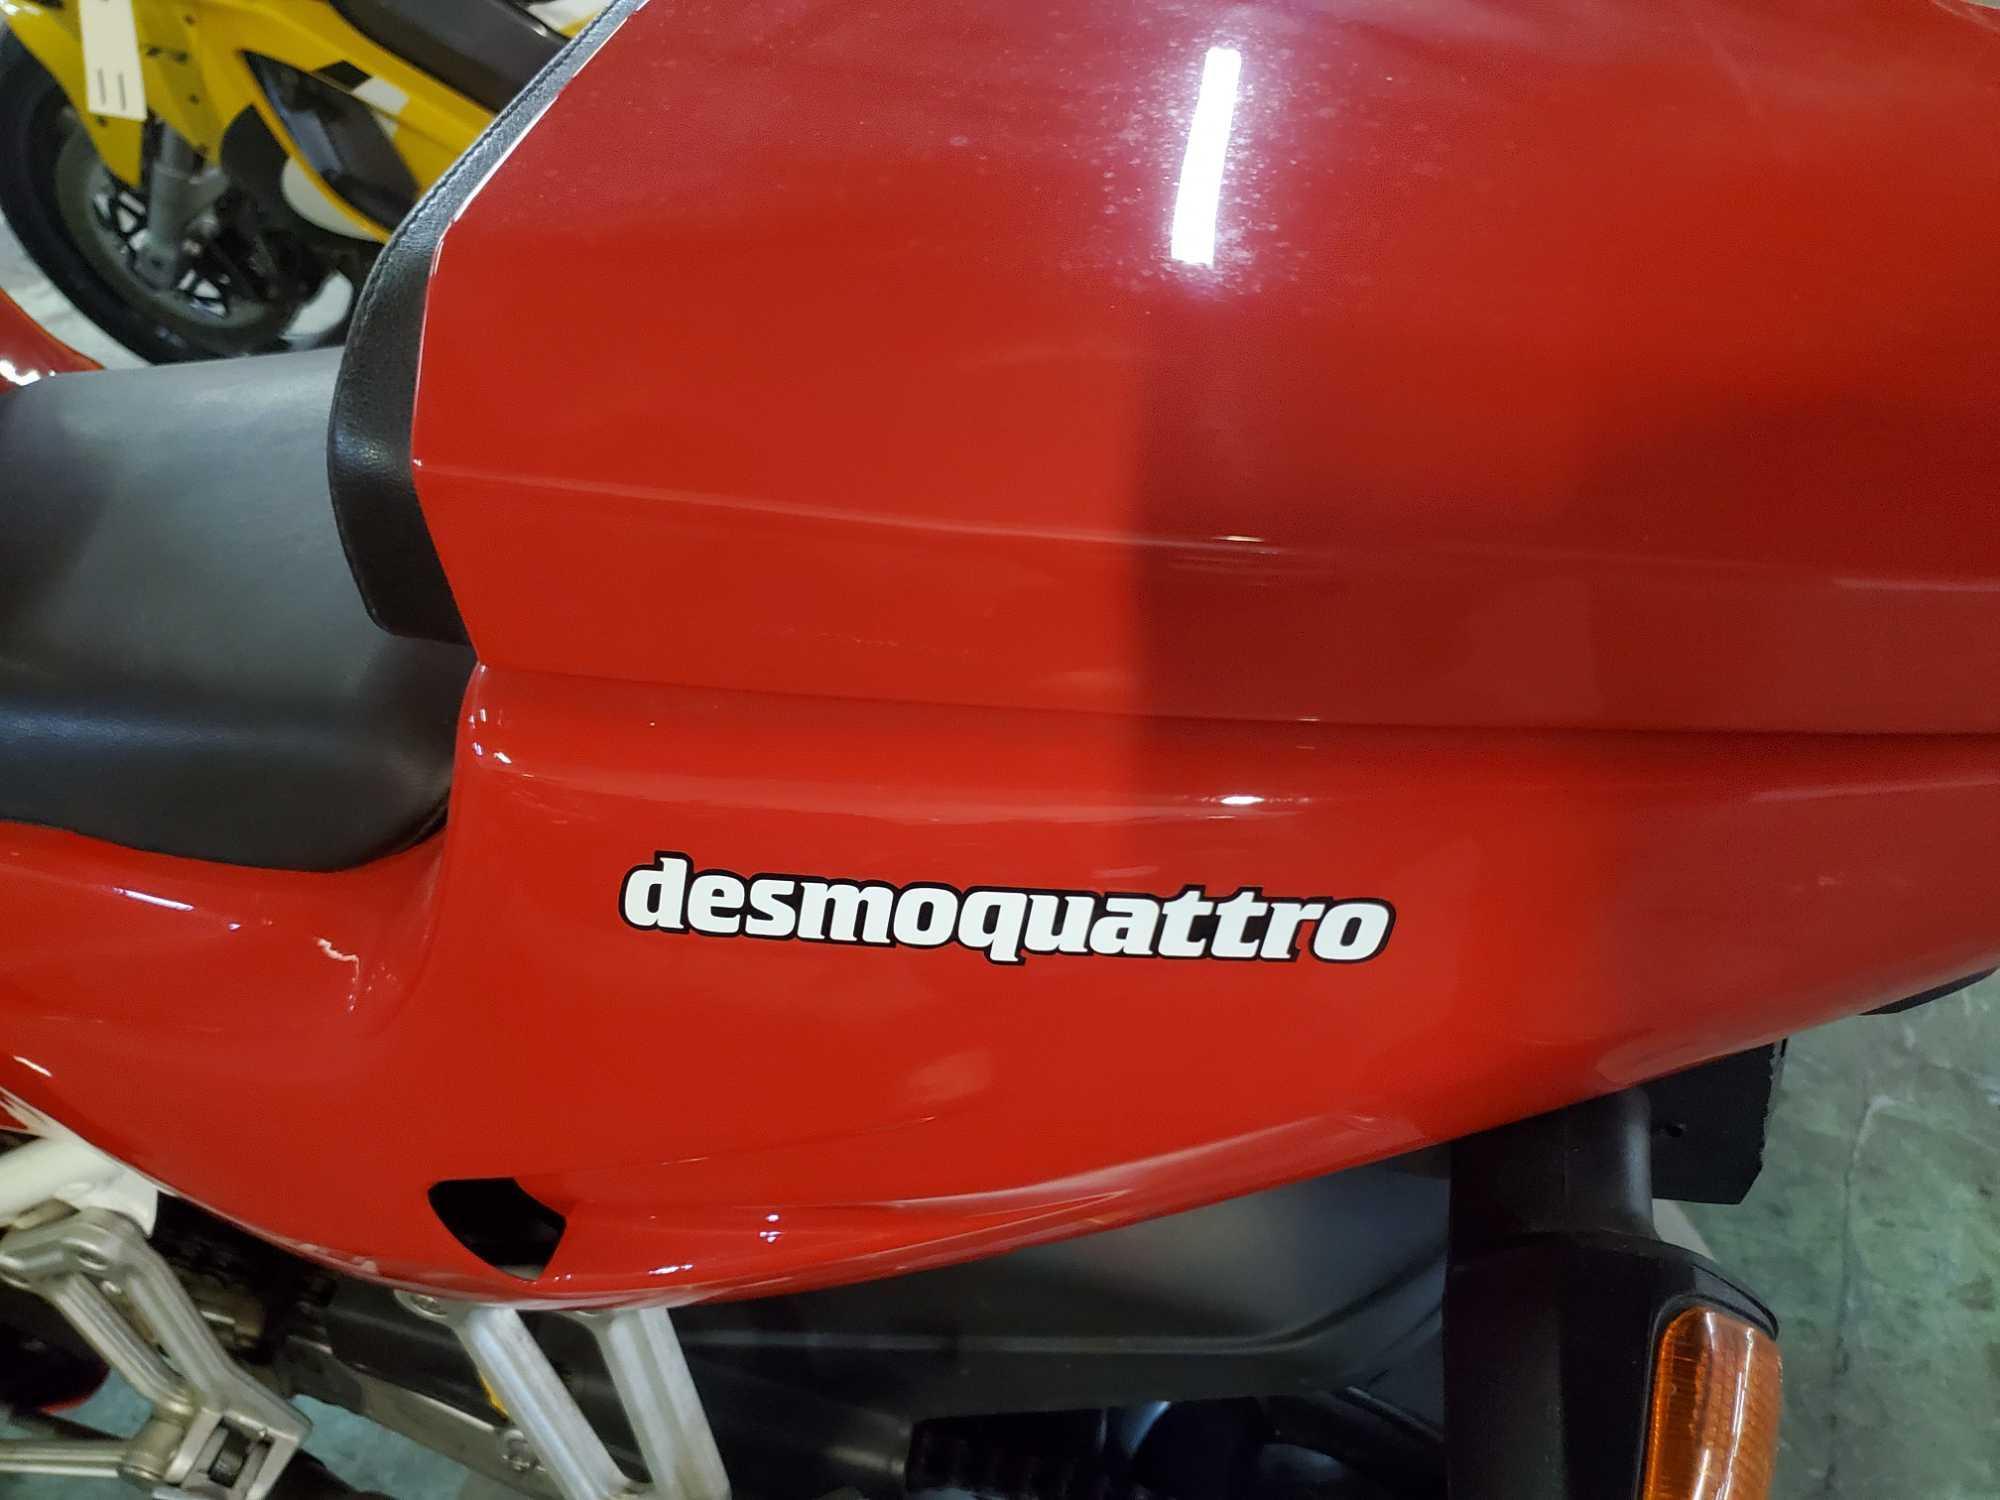 1992 Ducati 851